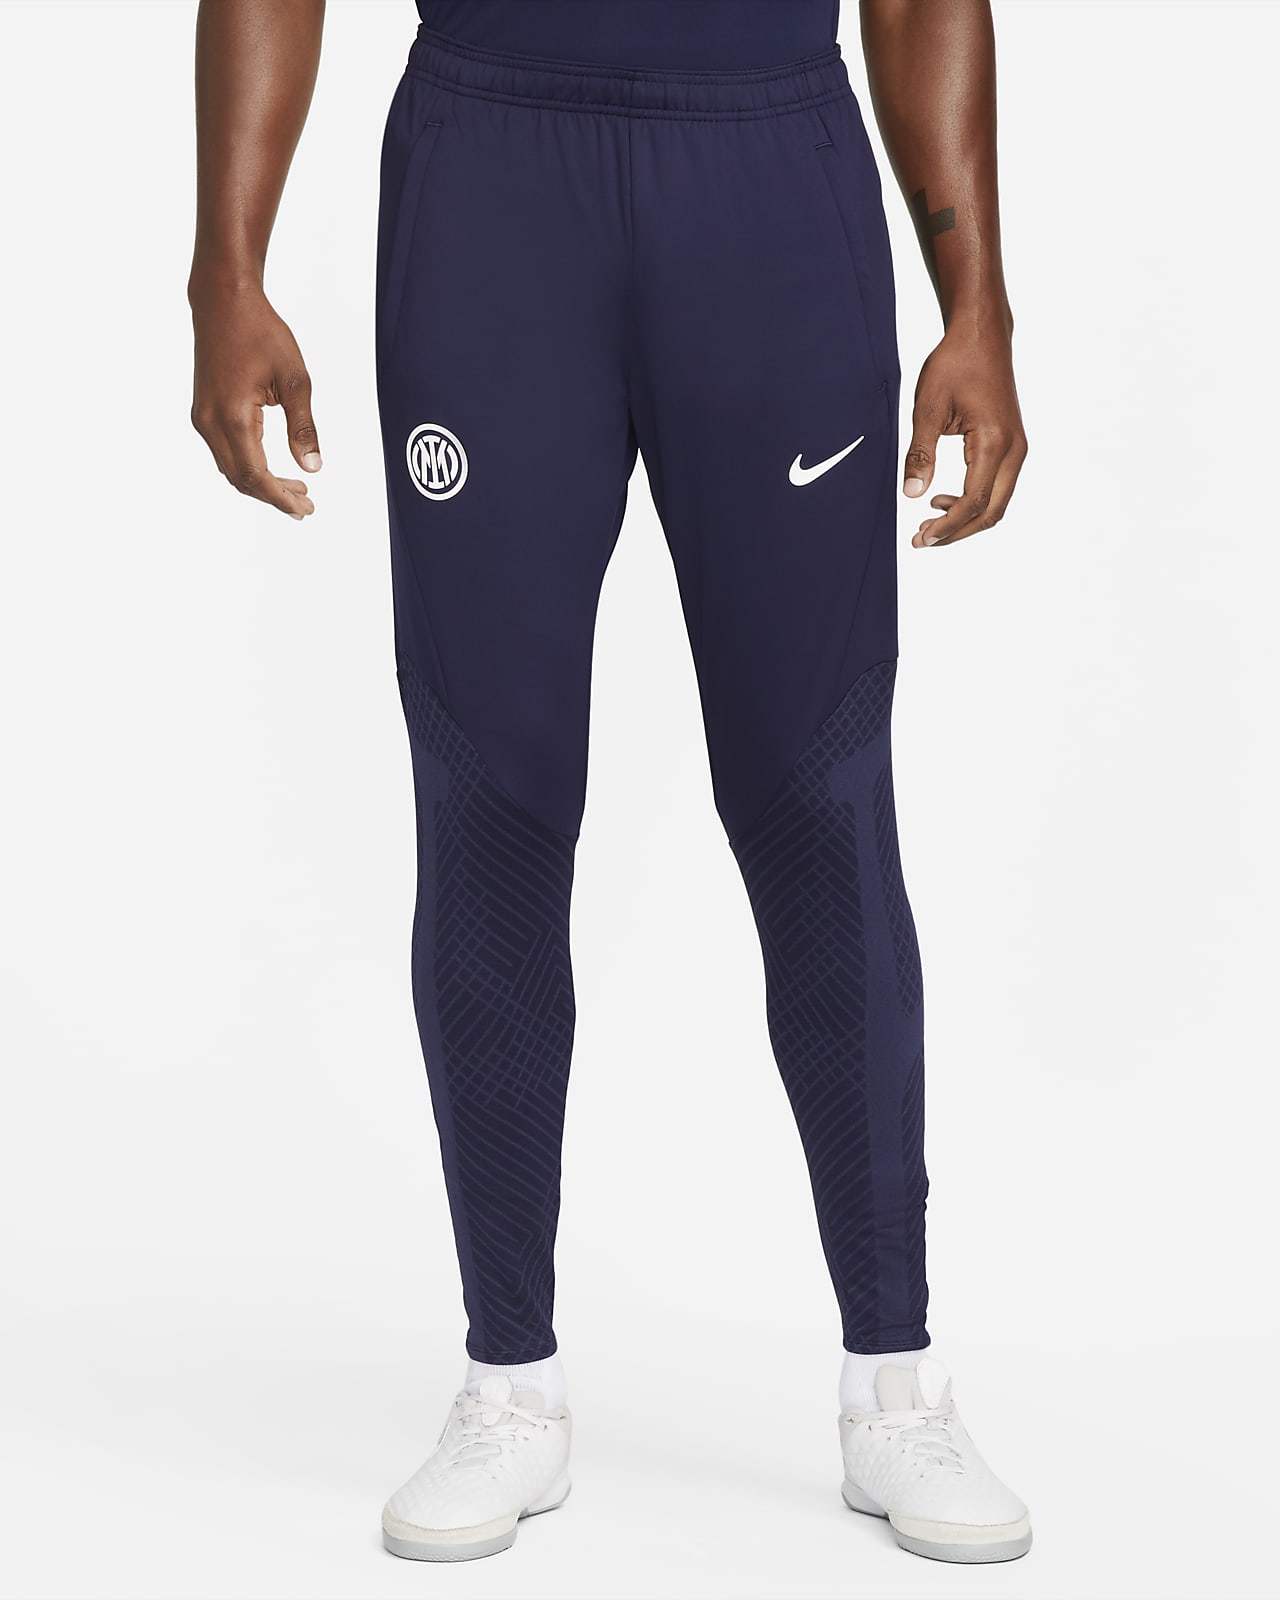 prangende Som regel Diverse Inter Milan Strike Men's Nike Dri-FIT Football Pants. Nike LU